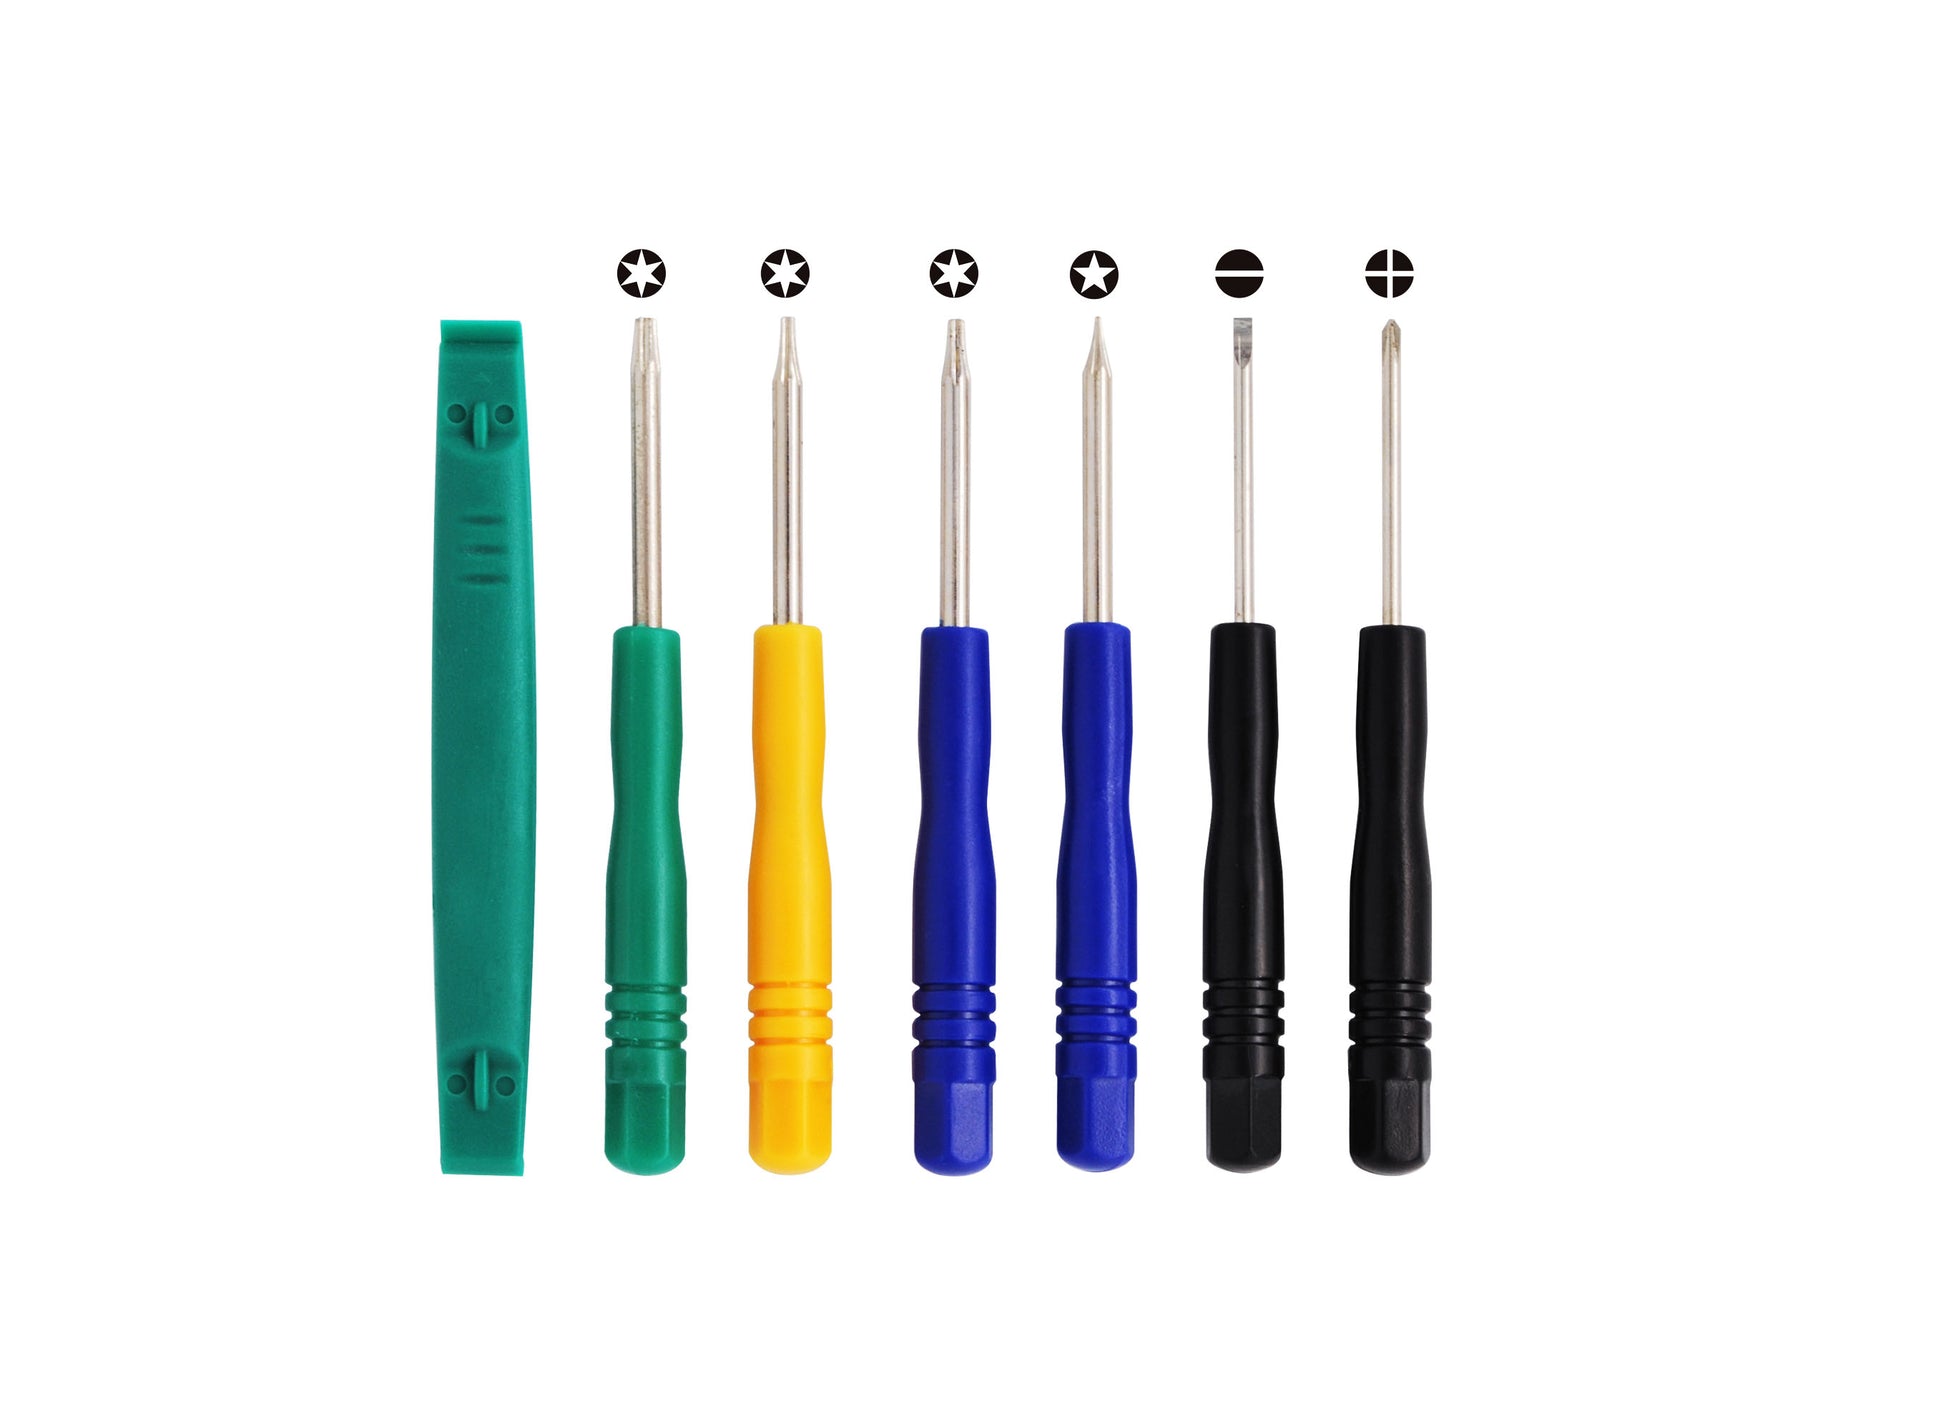 Set of 7 Tools (T8, T6, T5, T-, T+, Plastic & Pentalobe) for PDA, GPS, MP3, iPhone, iPod-SMAVtronics